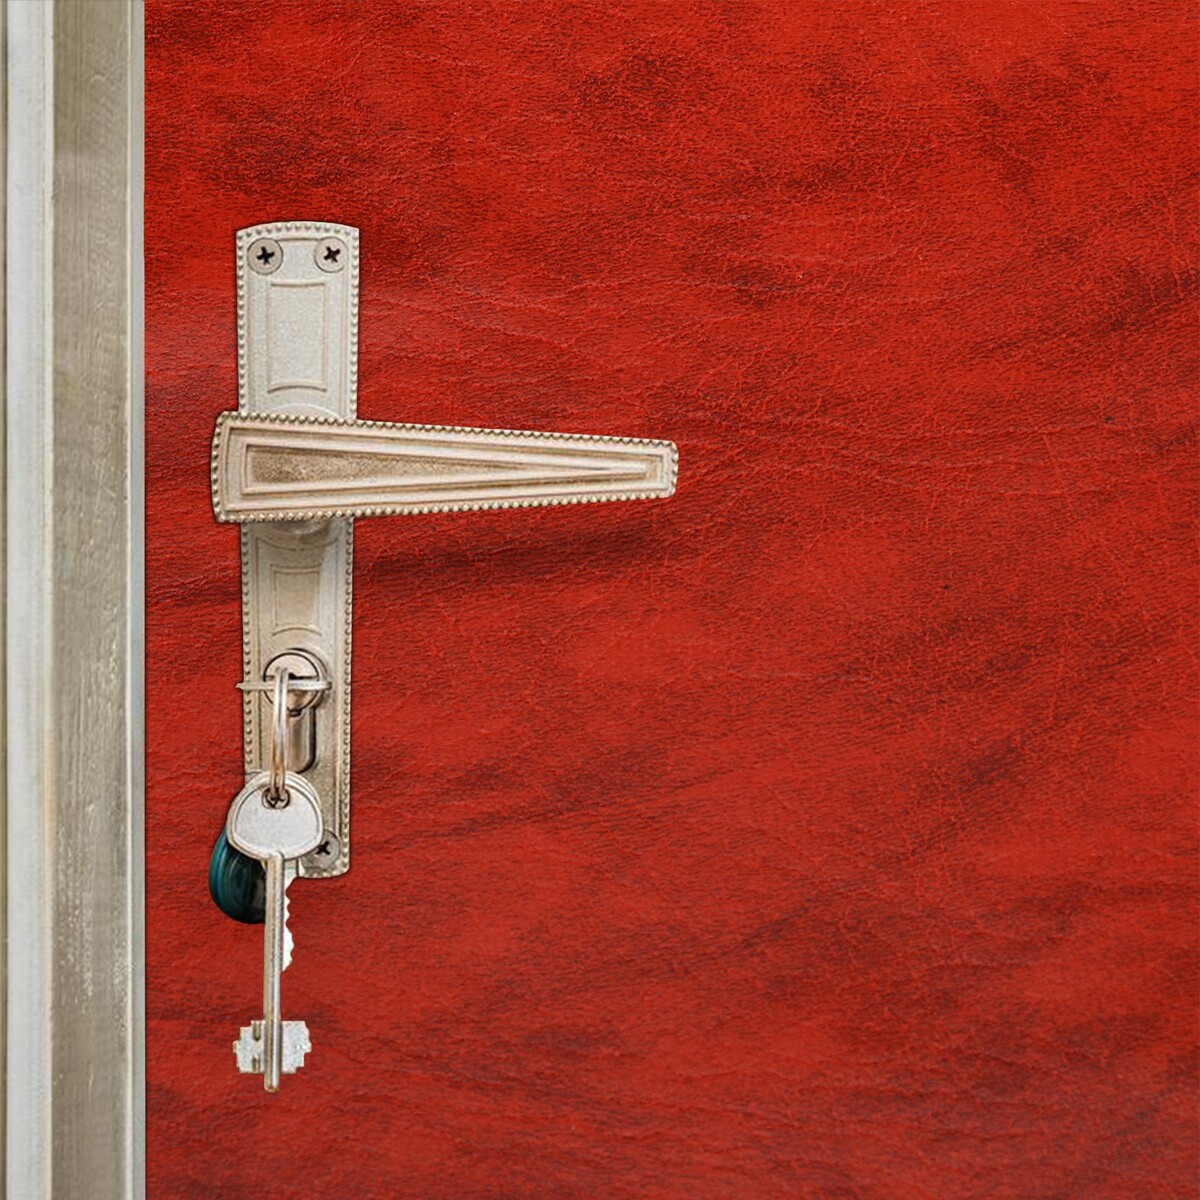 Комплект для обивки дверей 110 × 205 см: иск.кожа, поролон 5 мм, гвозди, струна, терракот,